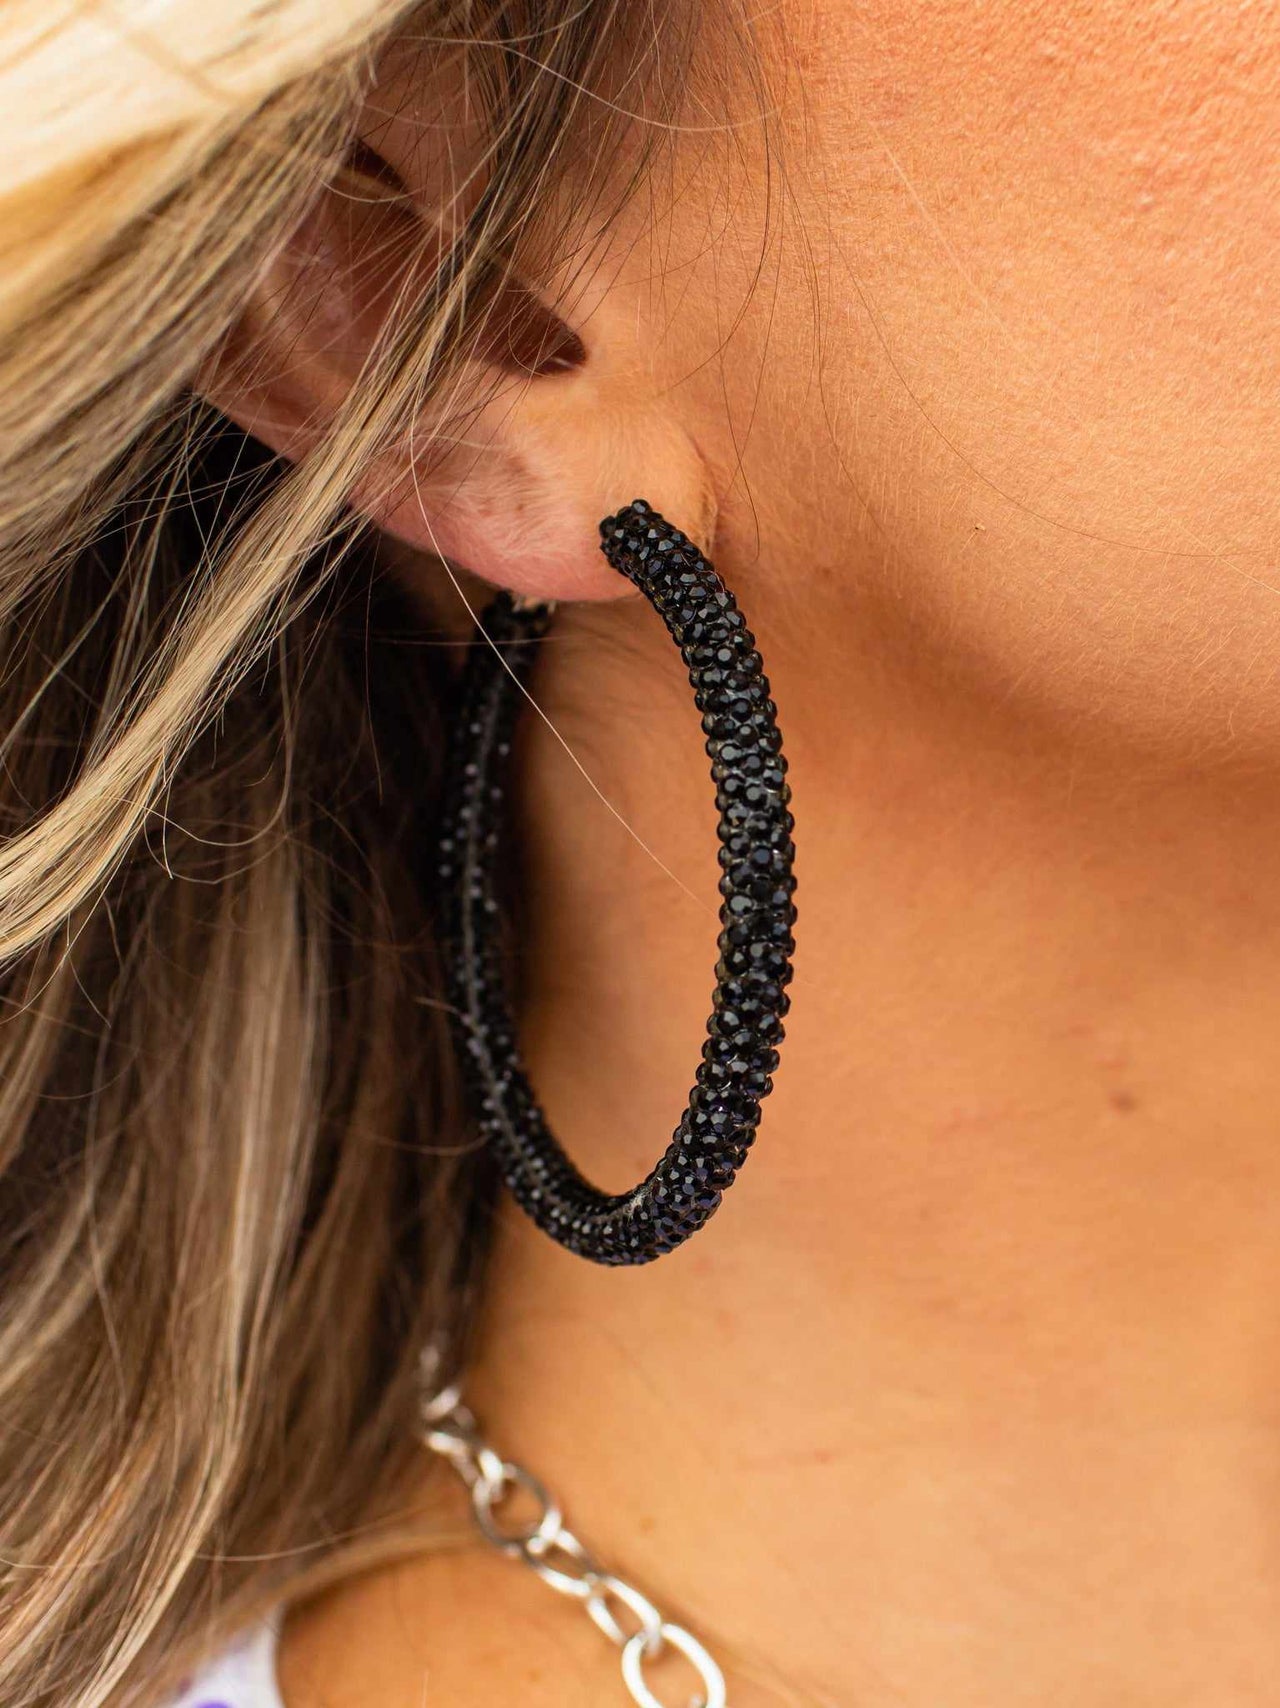 Crystal studded black hoop earrings.